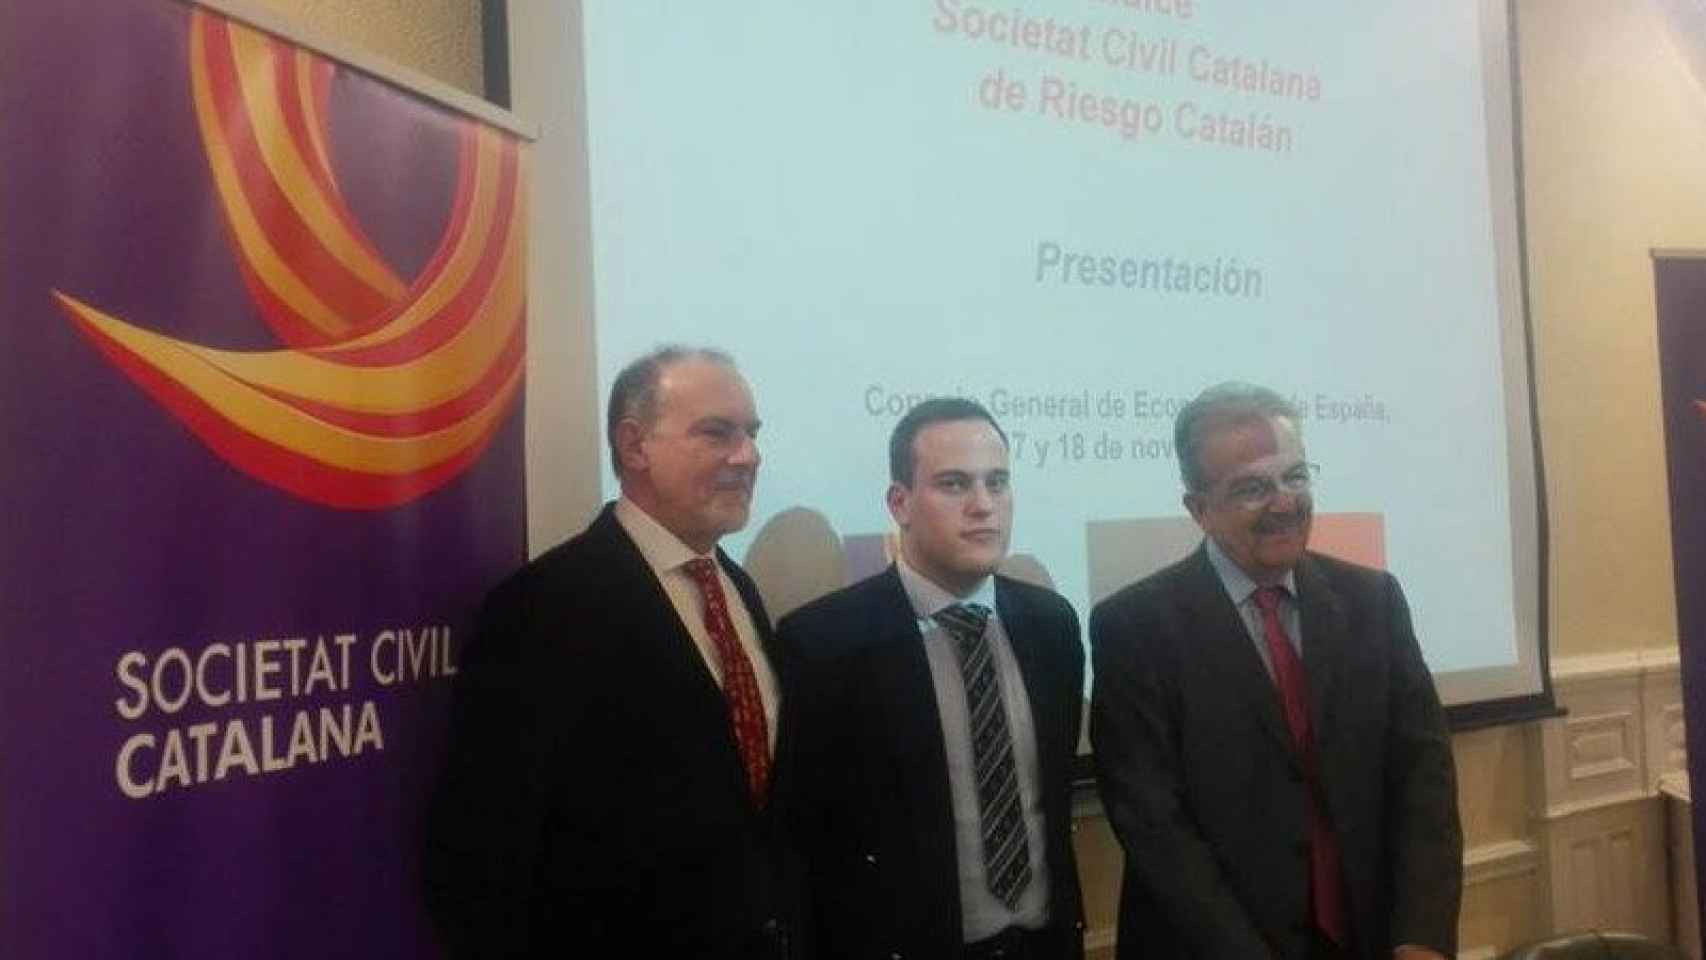 Presentación del 'Índice SCC de riesgo catalán'.